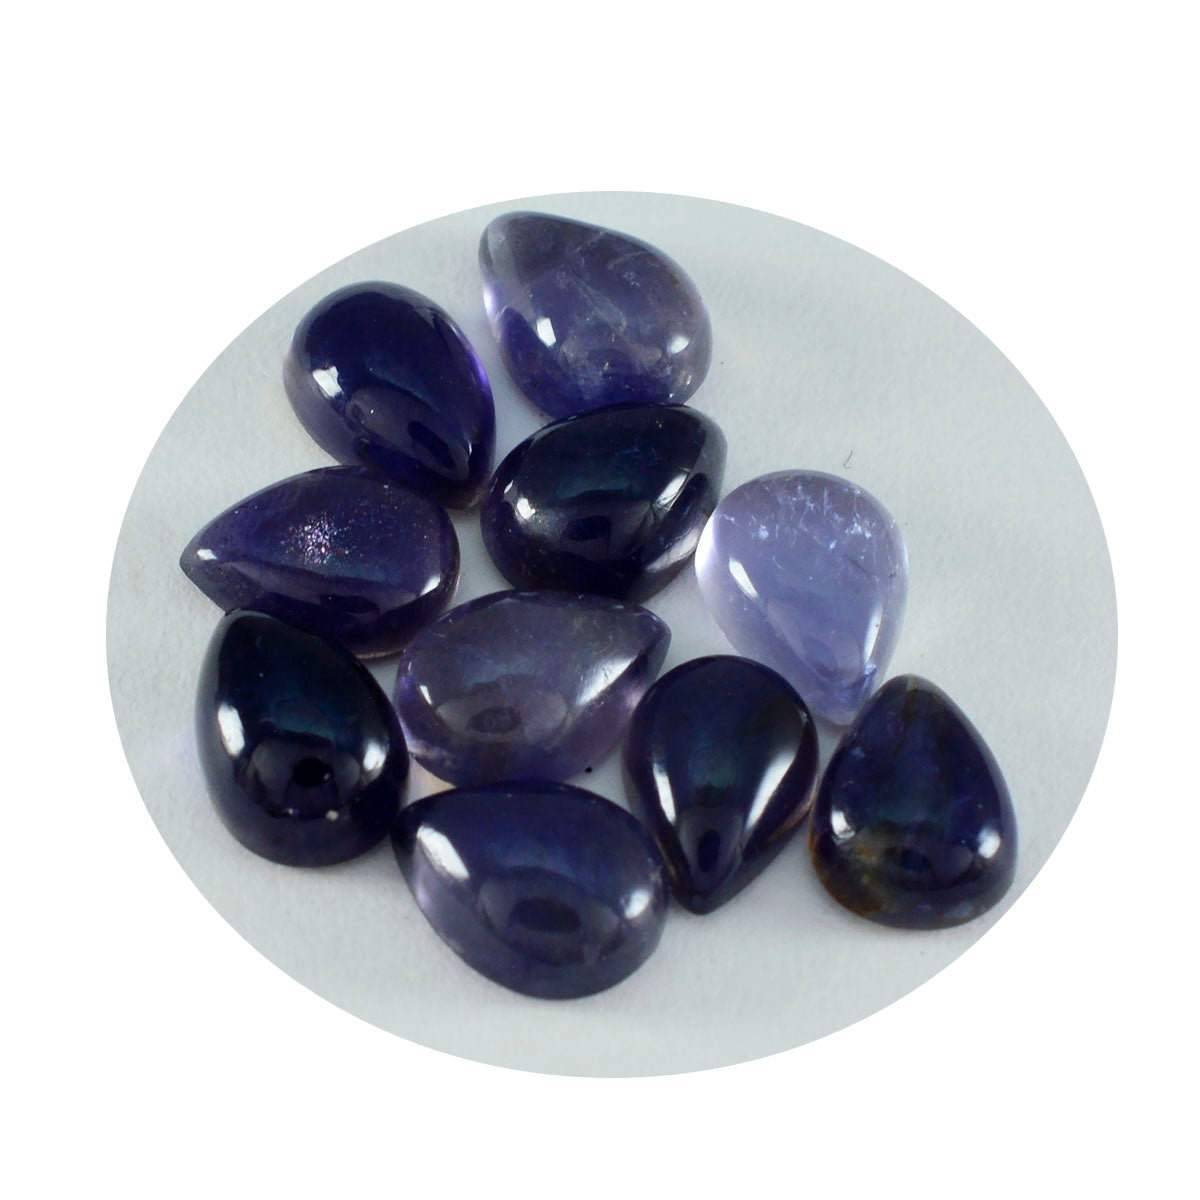 Riyogems 1 cabochon iolite bleu en forme de poire, pierre précieuse en vrac de qualité incroyable, 12x16mm